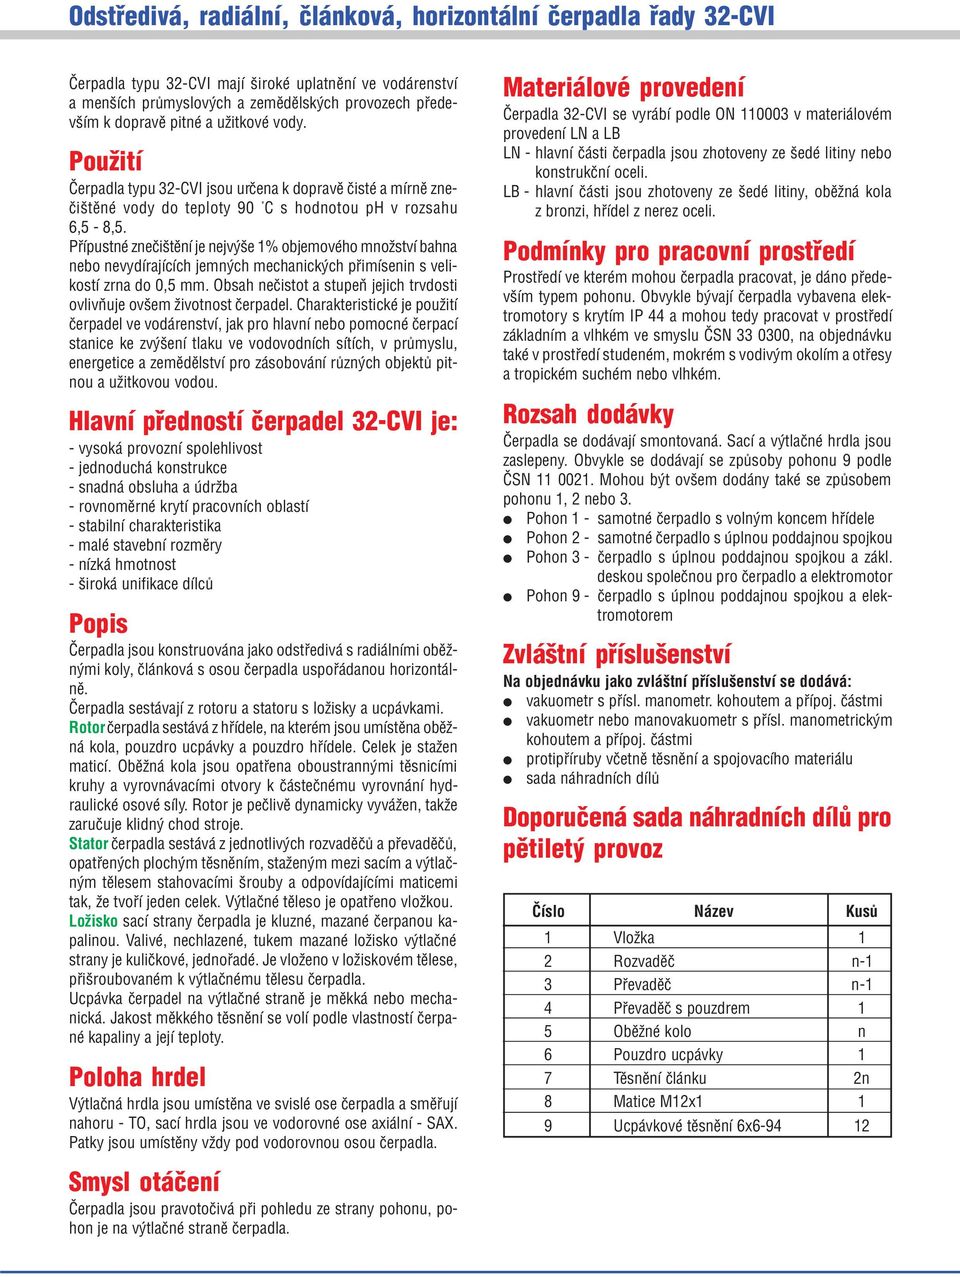 Pøípustné zneèištìní je nejvýše 1% objemového množství bahna nebo nevydírajících jemných mechanických pøimísenin s velikostí zrna do 0,5 mm.